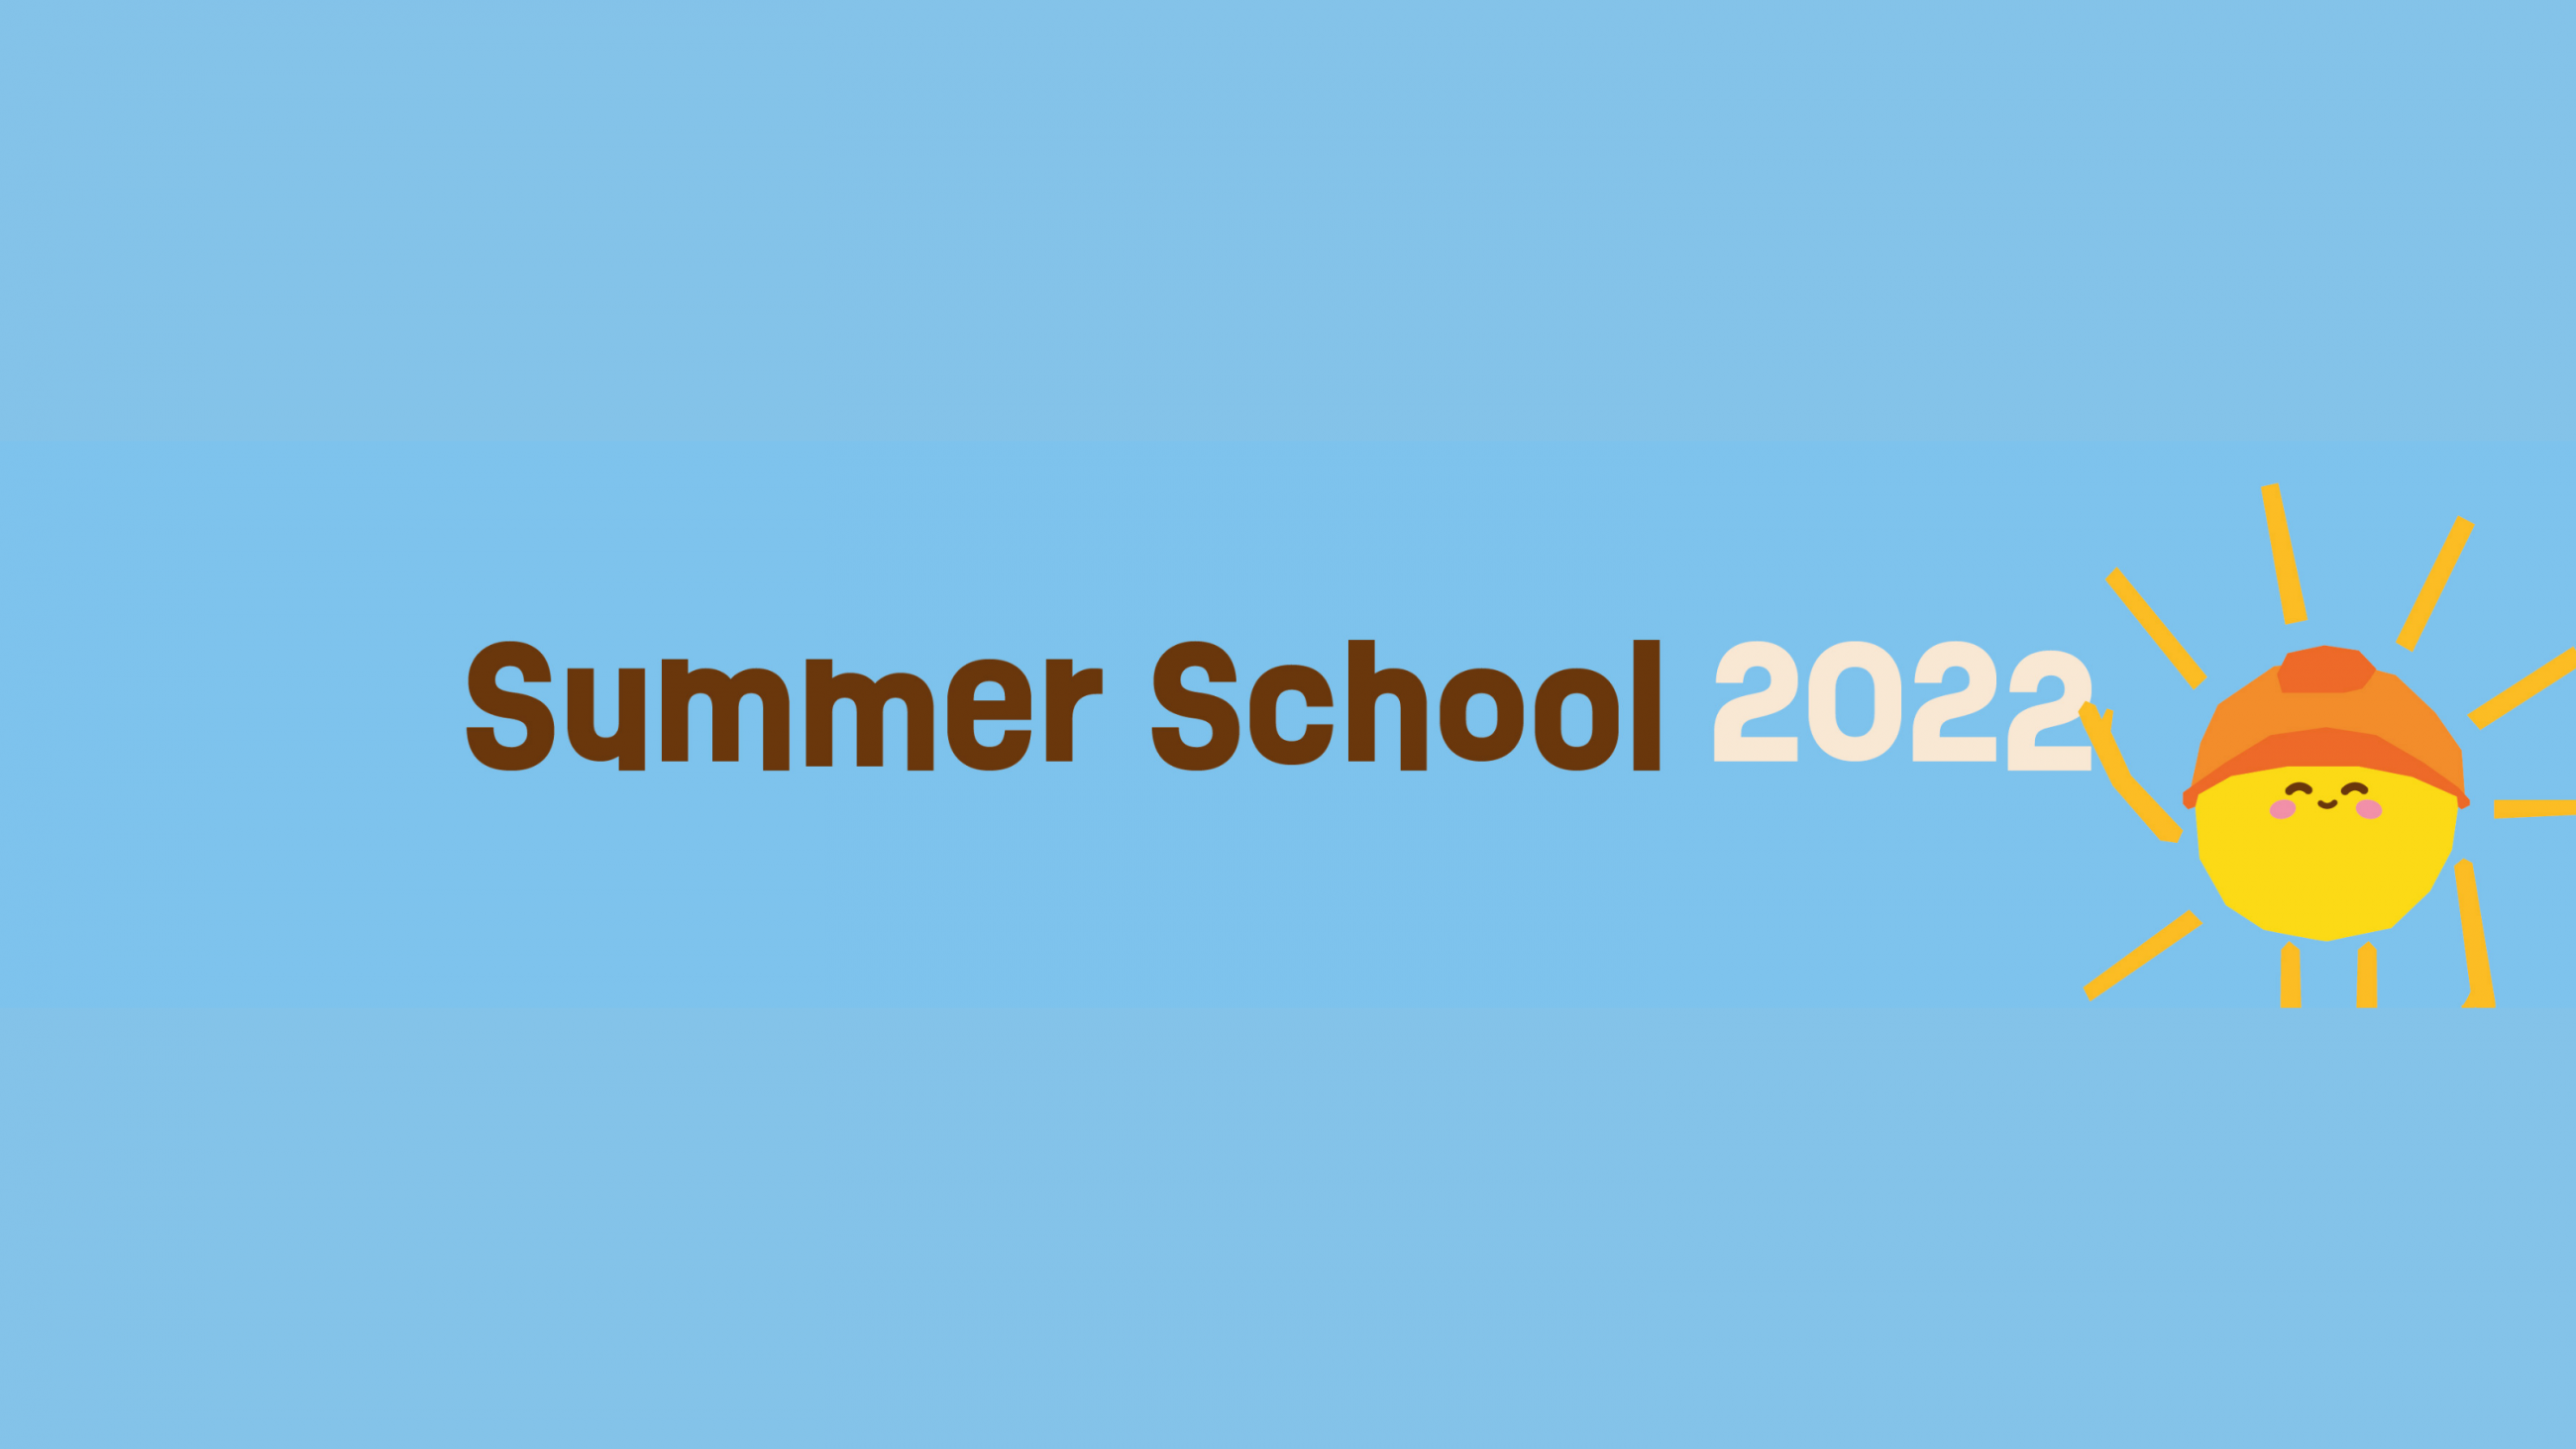 Text "Summer School 2022" auf blauem Hintergrund; daneben eine gelbe Sonne mit orangefarbenem Bauhelm